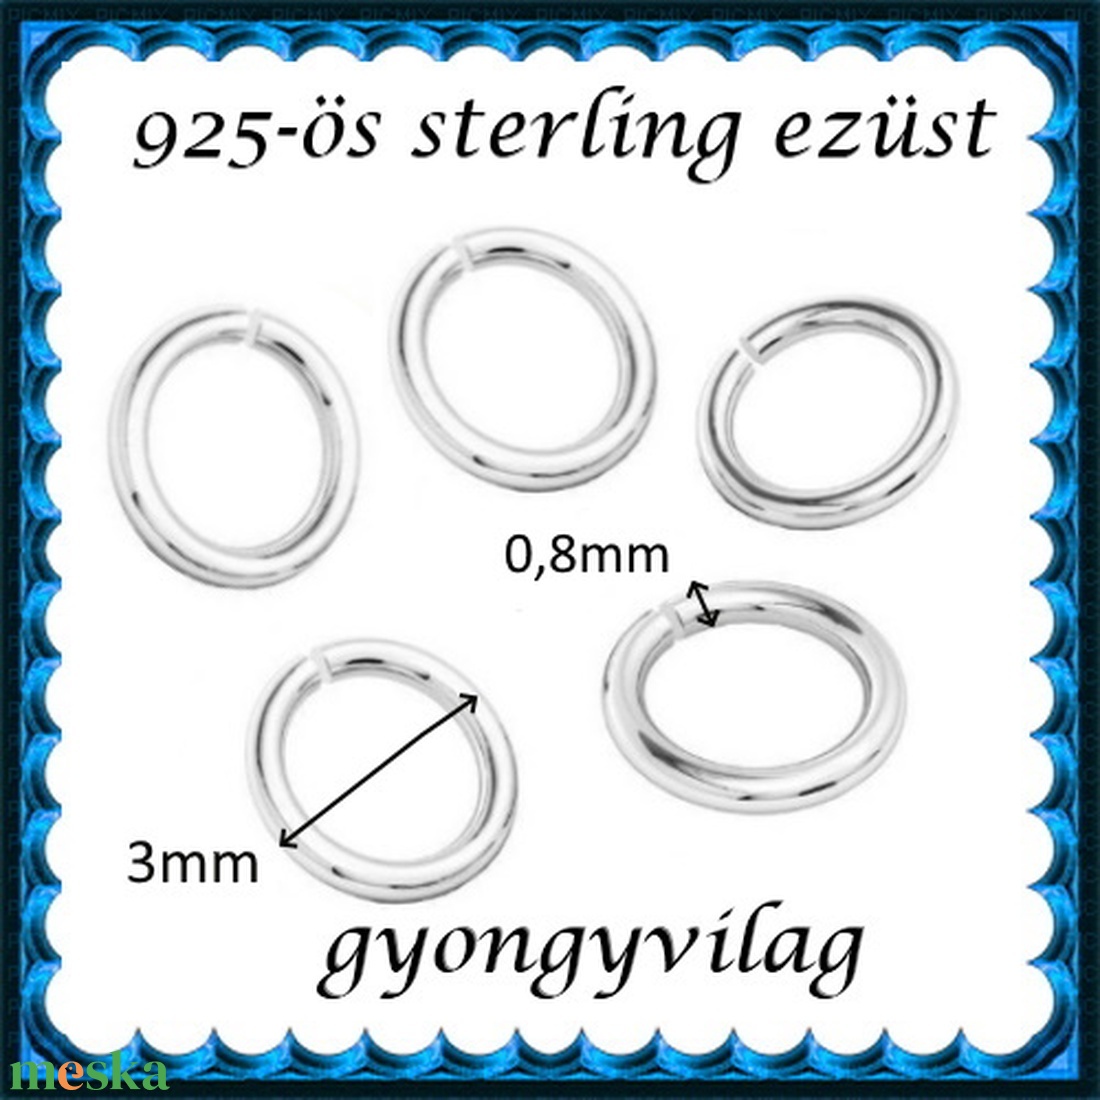 925-ös sterling ezüst ékszerkellék: karika nyitott ESZK NY 3x0,8 mm 5db/csomag - gyöngy, ékszerkellék - egyéb alkatrész - Meska.hu